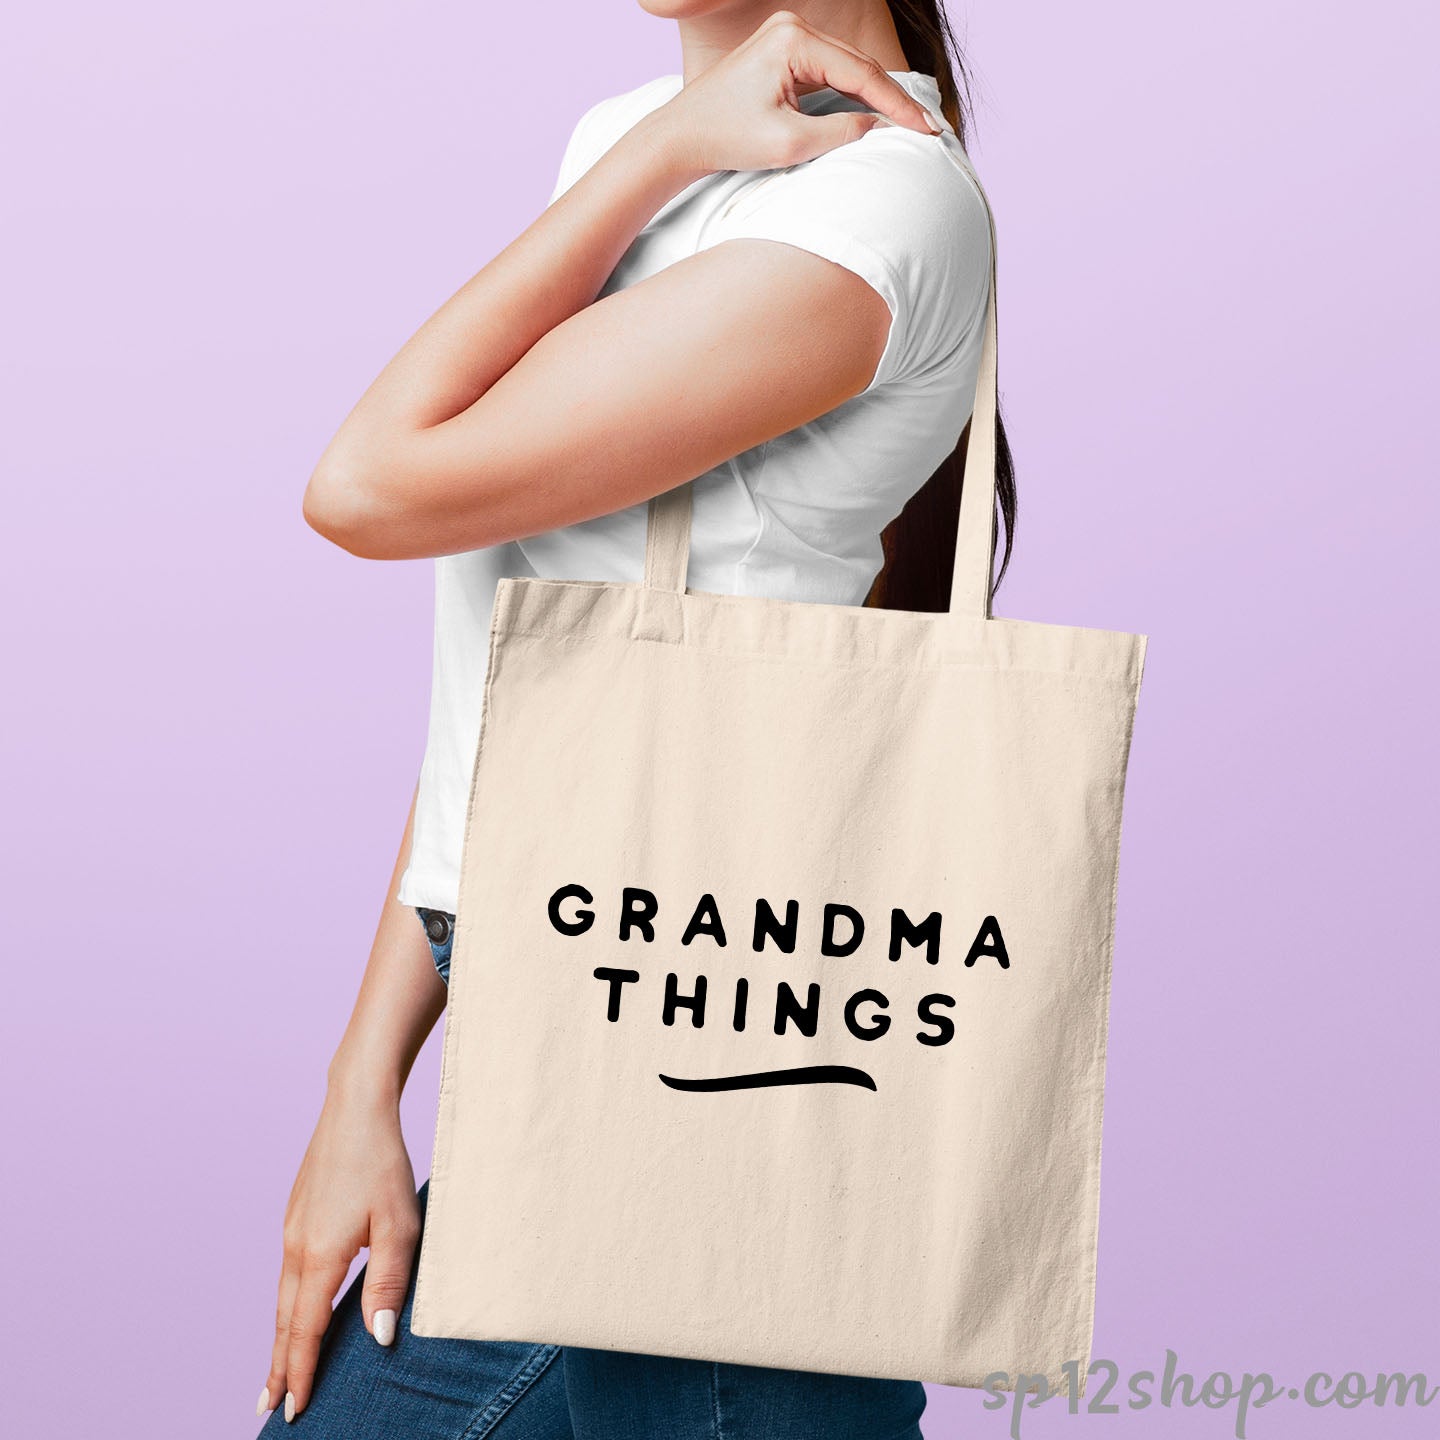 Grandma Things Tote Bag